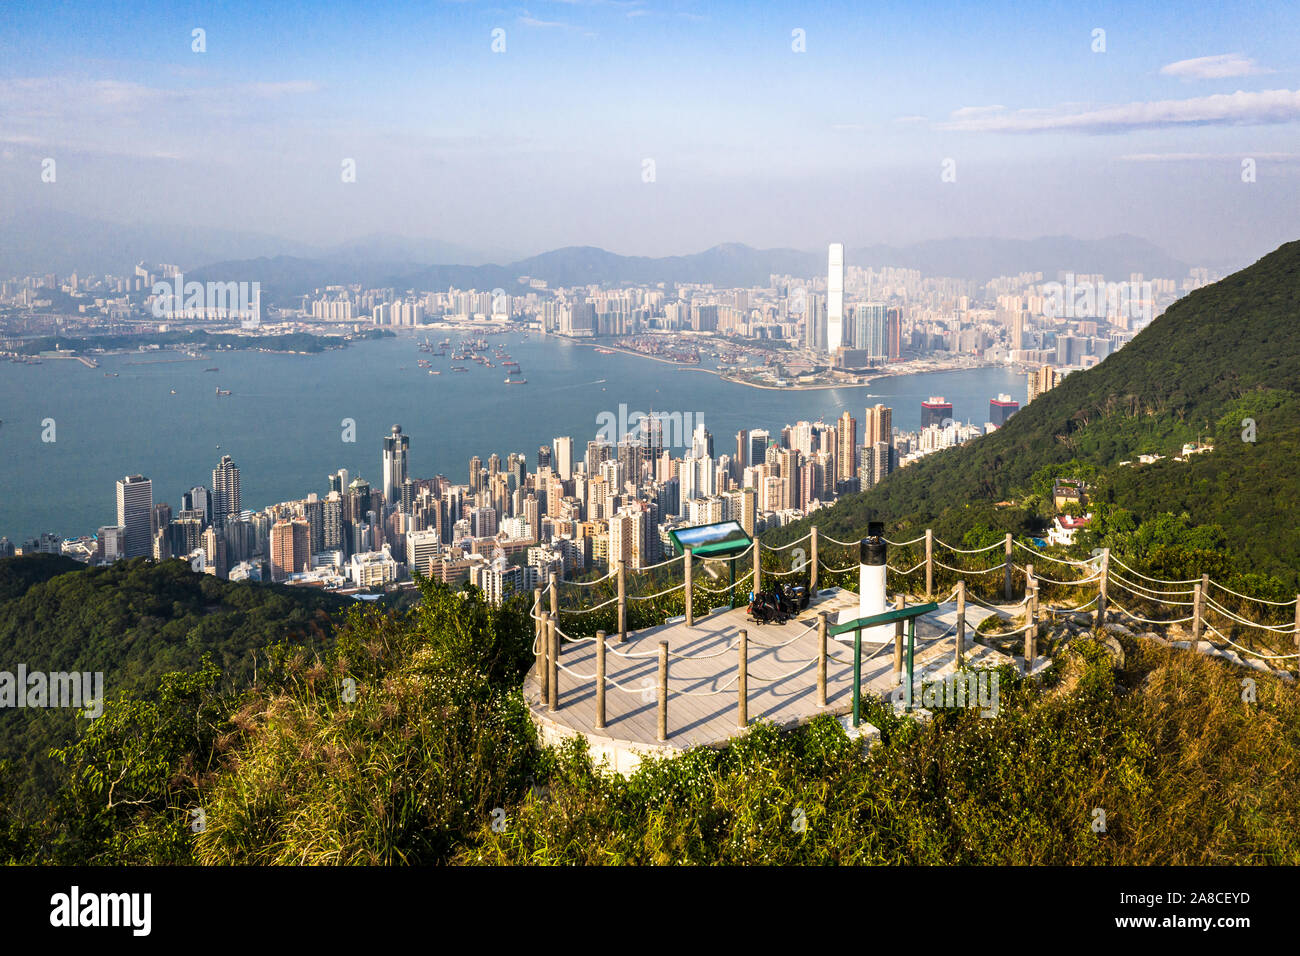 Plate-forme d'observation en haut de la crête ouest haute, à côté du Victoria Peak, avec la célèbre île de Hong Kong, Central district skyline et sur Kowloon Banque D'Images